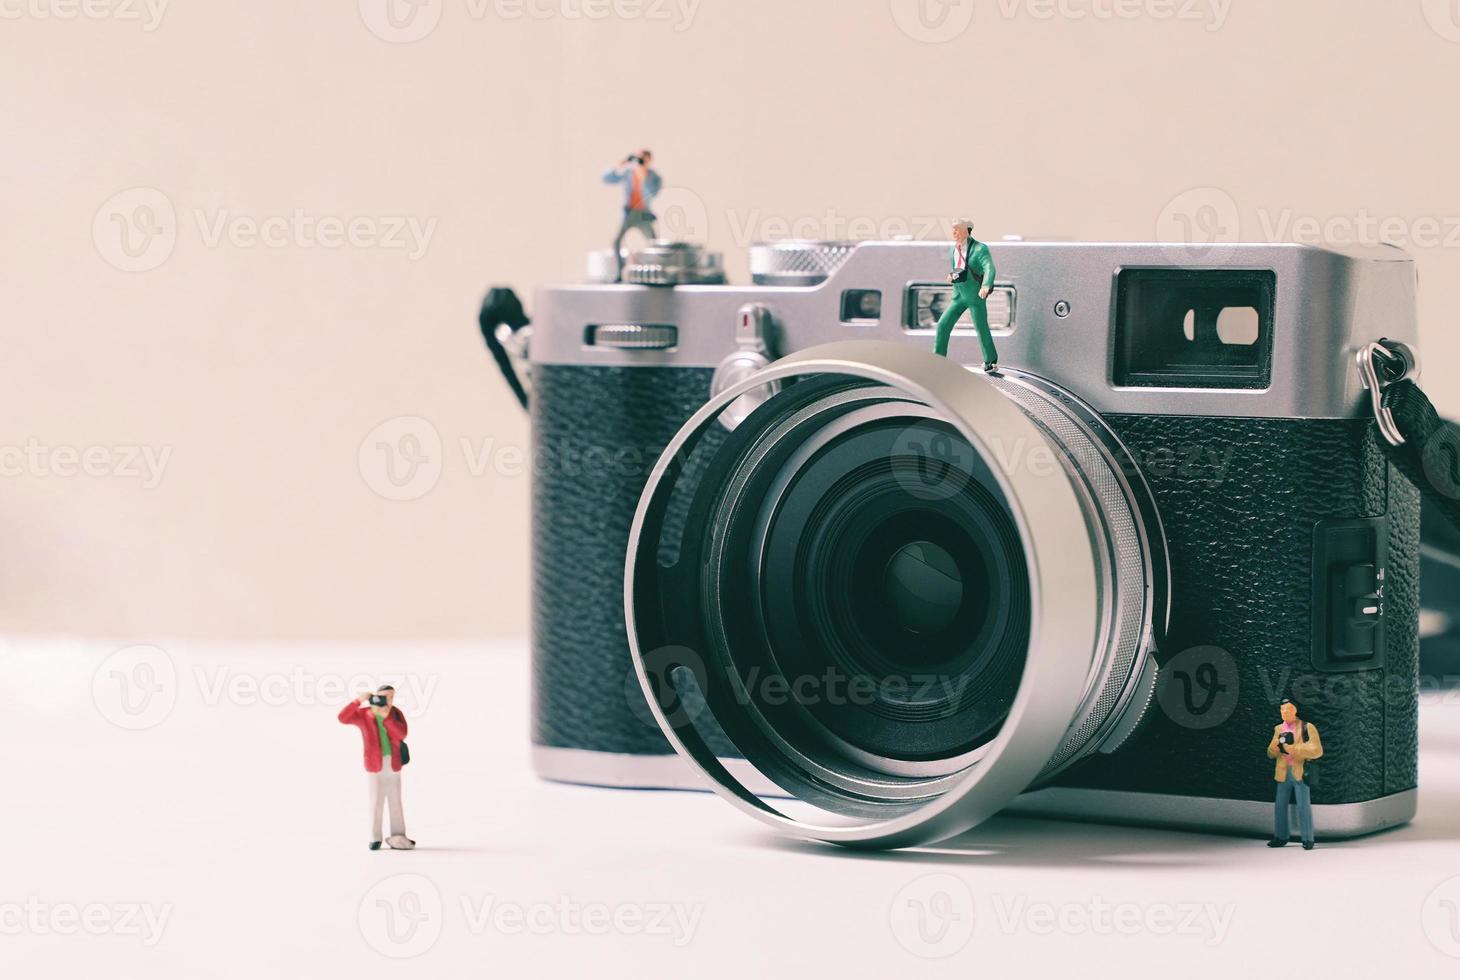 miniatuur groep van mensen fotograaf figuren met camera, kunst fotografie concept foto